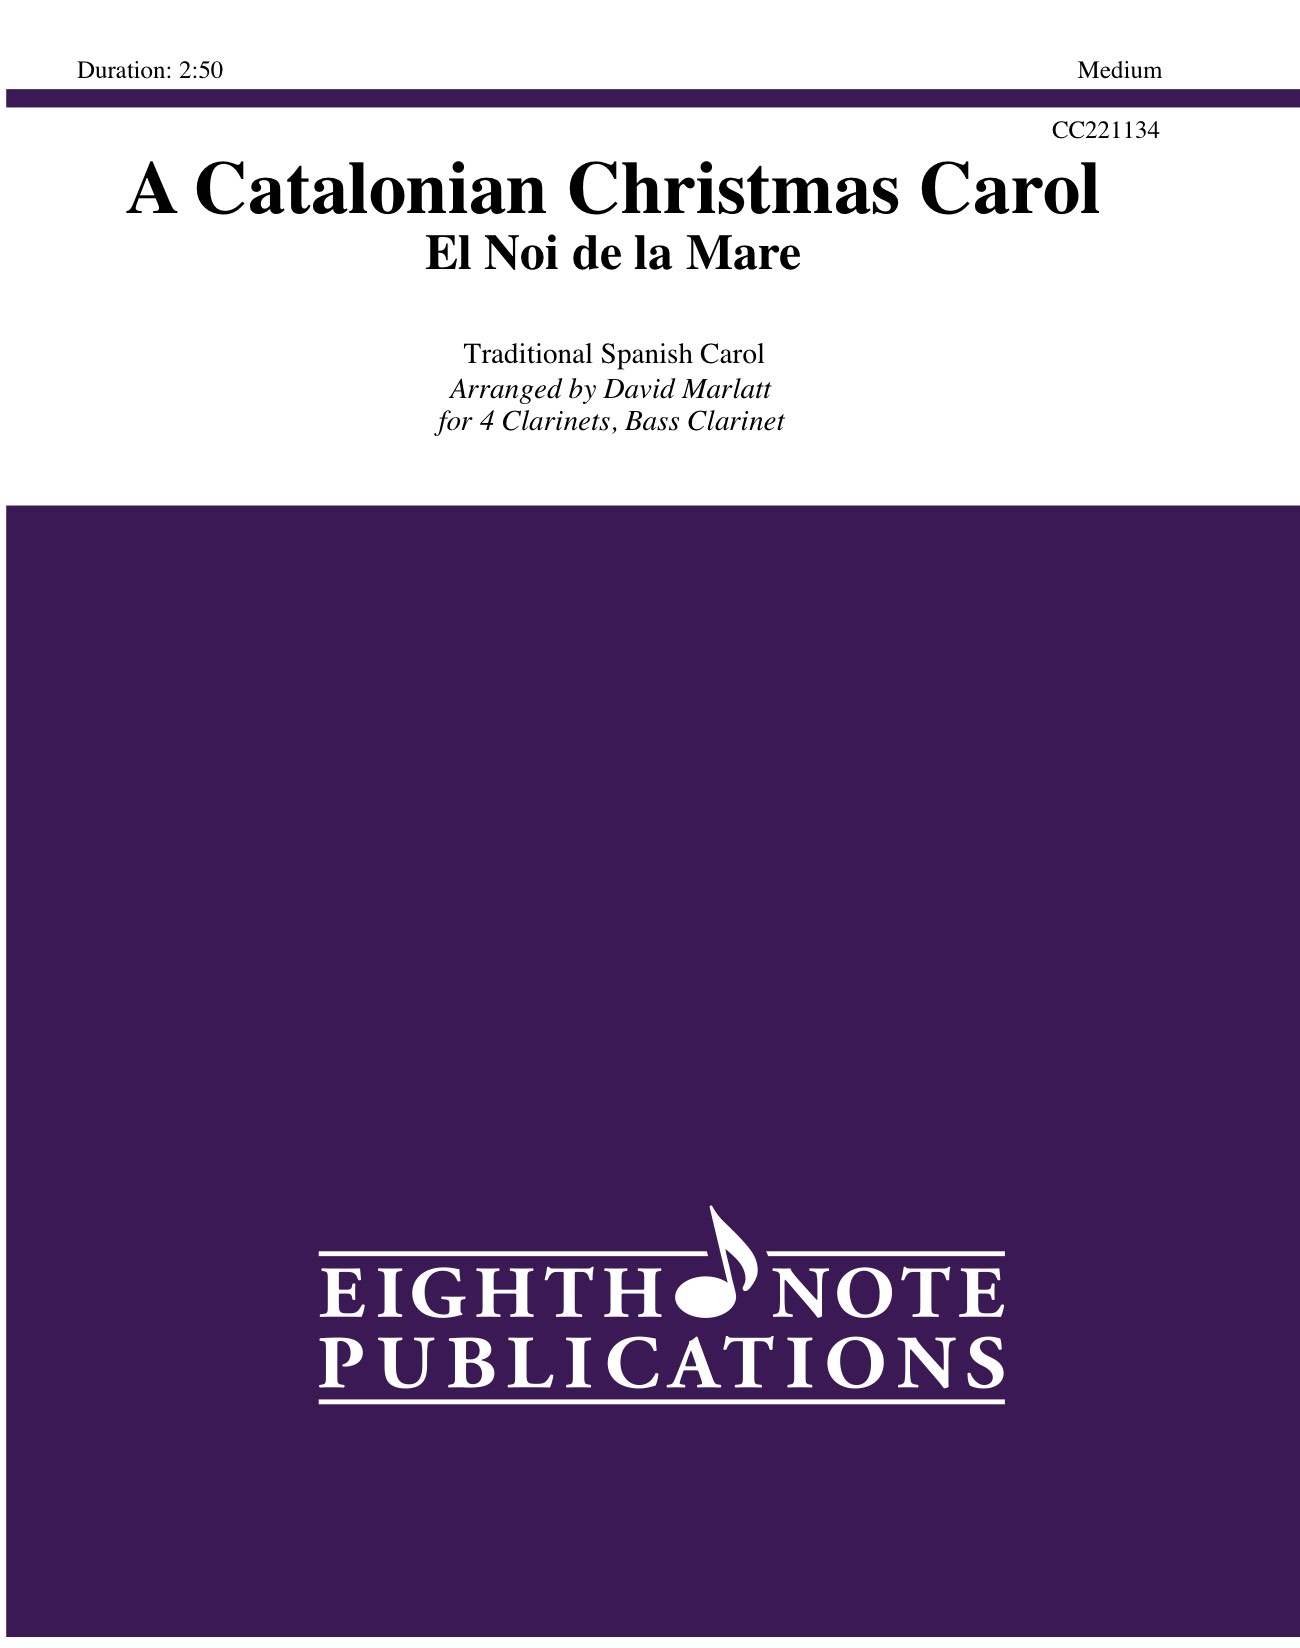 Catalonian Christmas Carol, A - El Noi de la Mare -  Traditional Spanish Carol